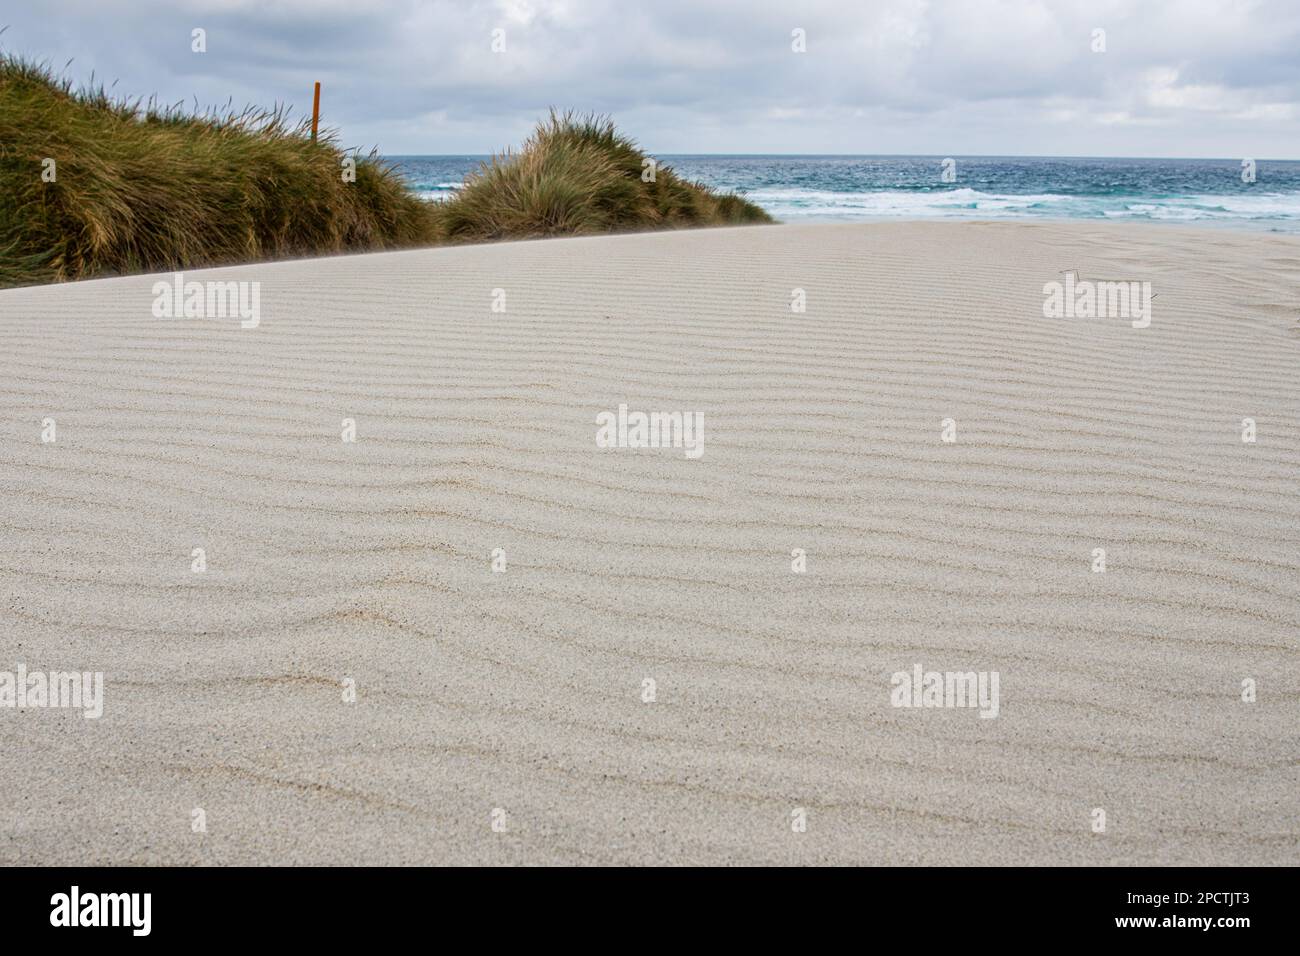 Dune di sabbia bianca e i modelli di increspature nella sabbia con l'oceano pacifico dietro, una scena minimalista in Aotearoa Nuova Zelanda. Foto Stock